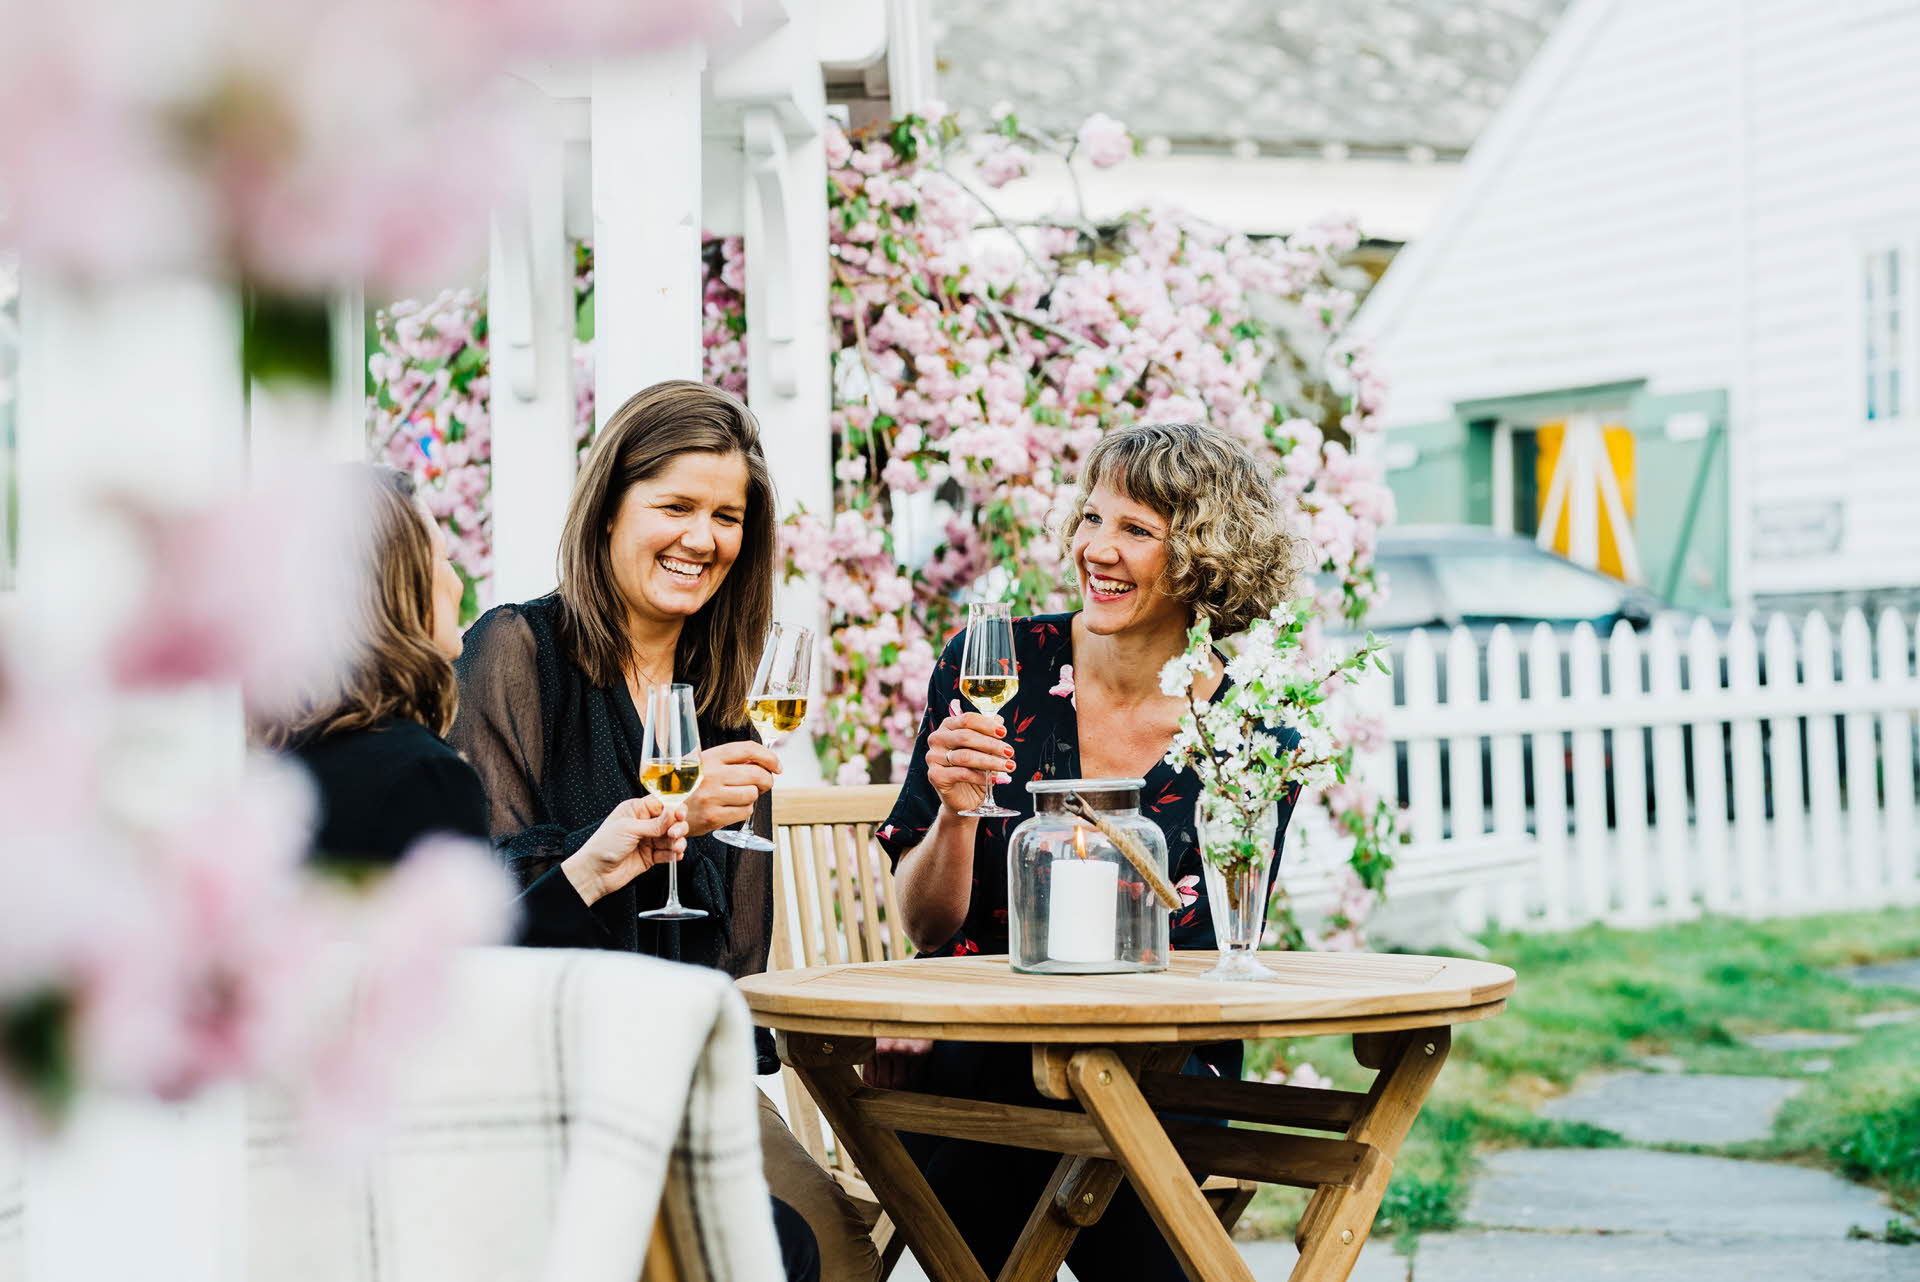 Trois femmes assises dans un jardin boivent du cidre Hardanger parmi les arbres fruitiers en fleurs